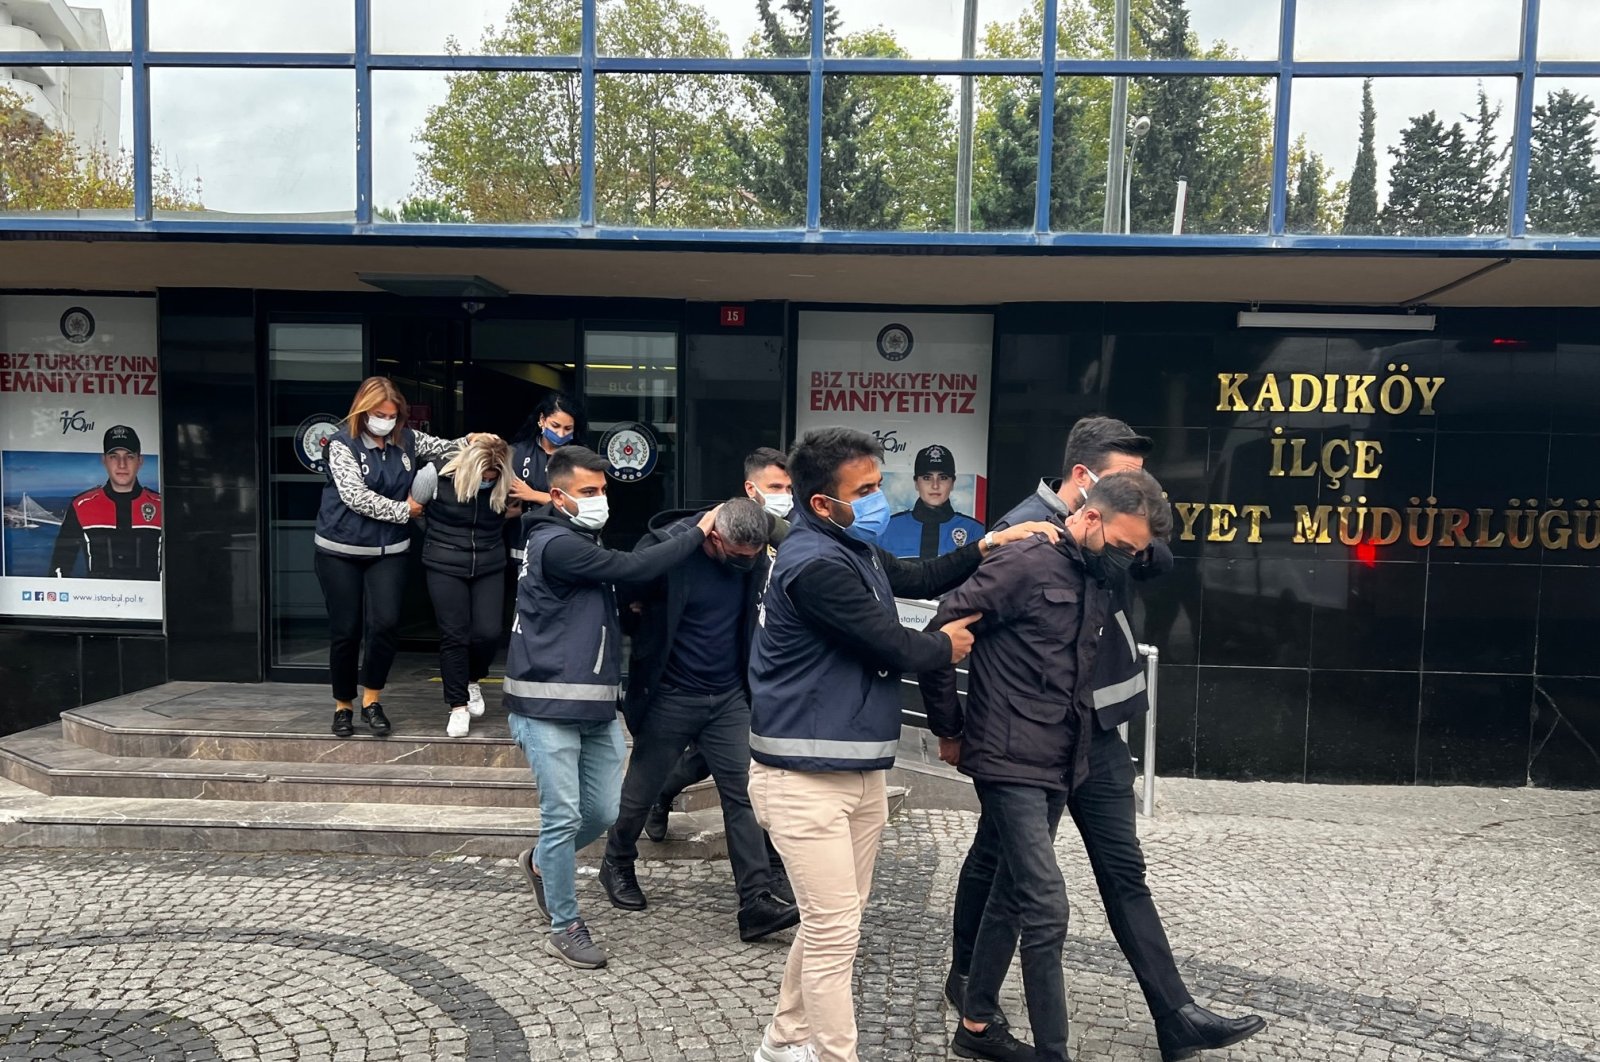 Polisi Istanbul membanggakan keberhasilan memecahkan semua kasus pembunuhan pada tahun 2021